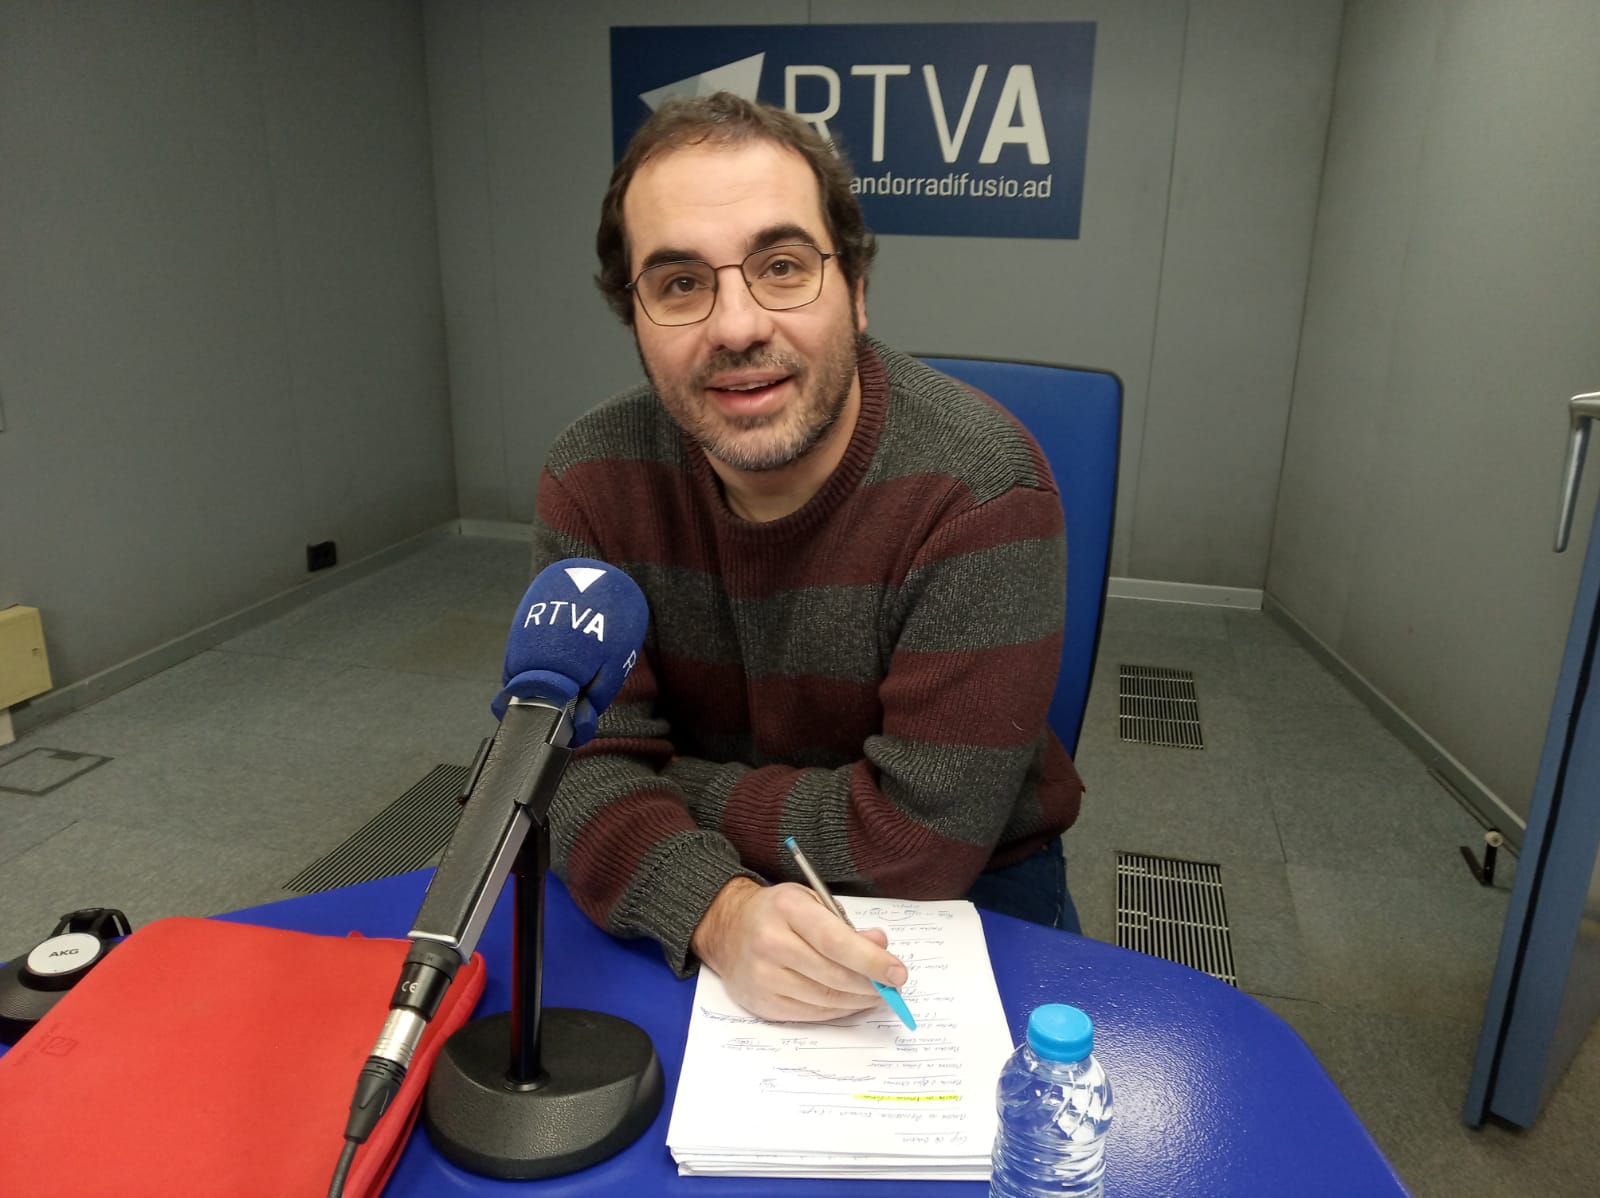 Joc d'escons: últims moviments dins la política Andorrana, amb Yvan Lara